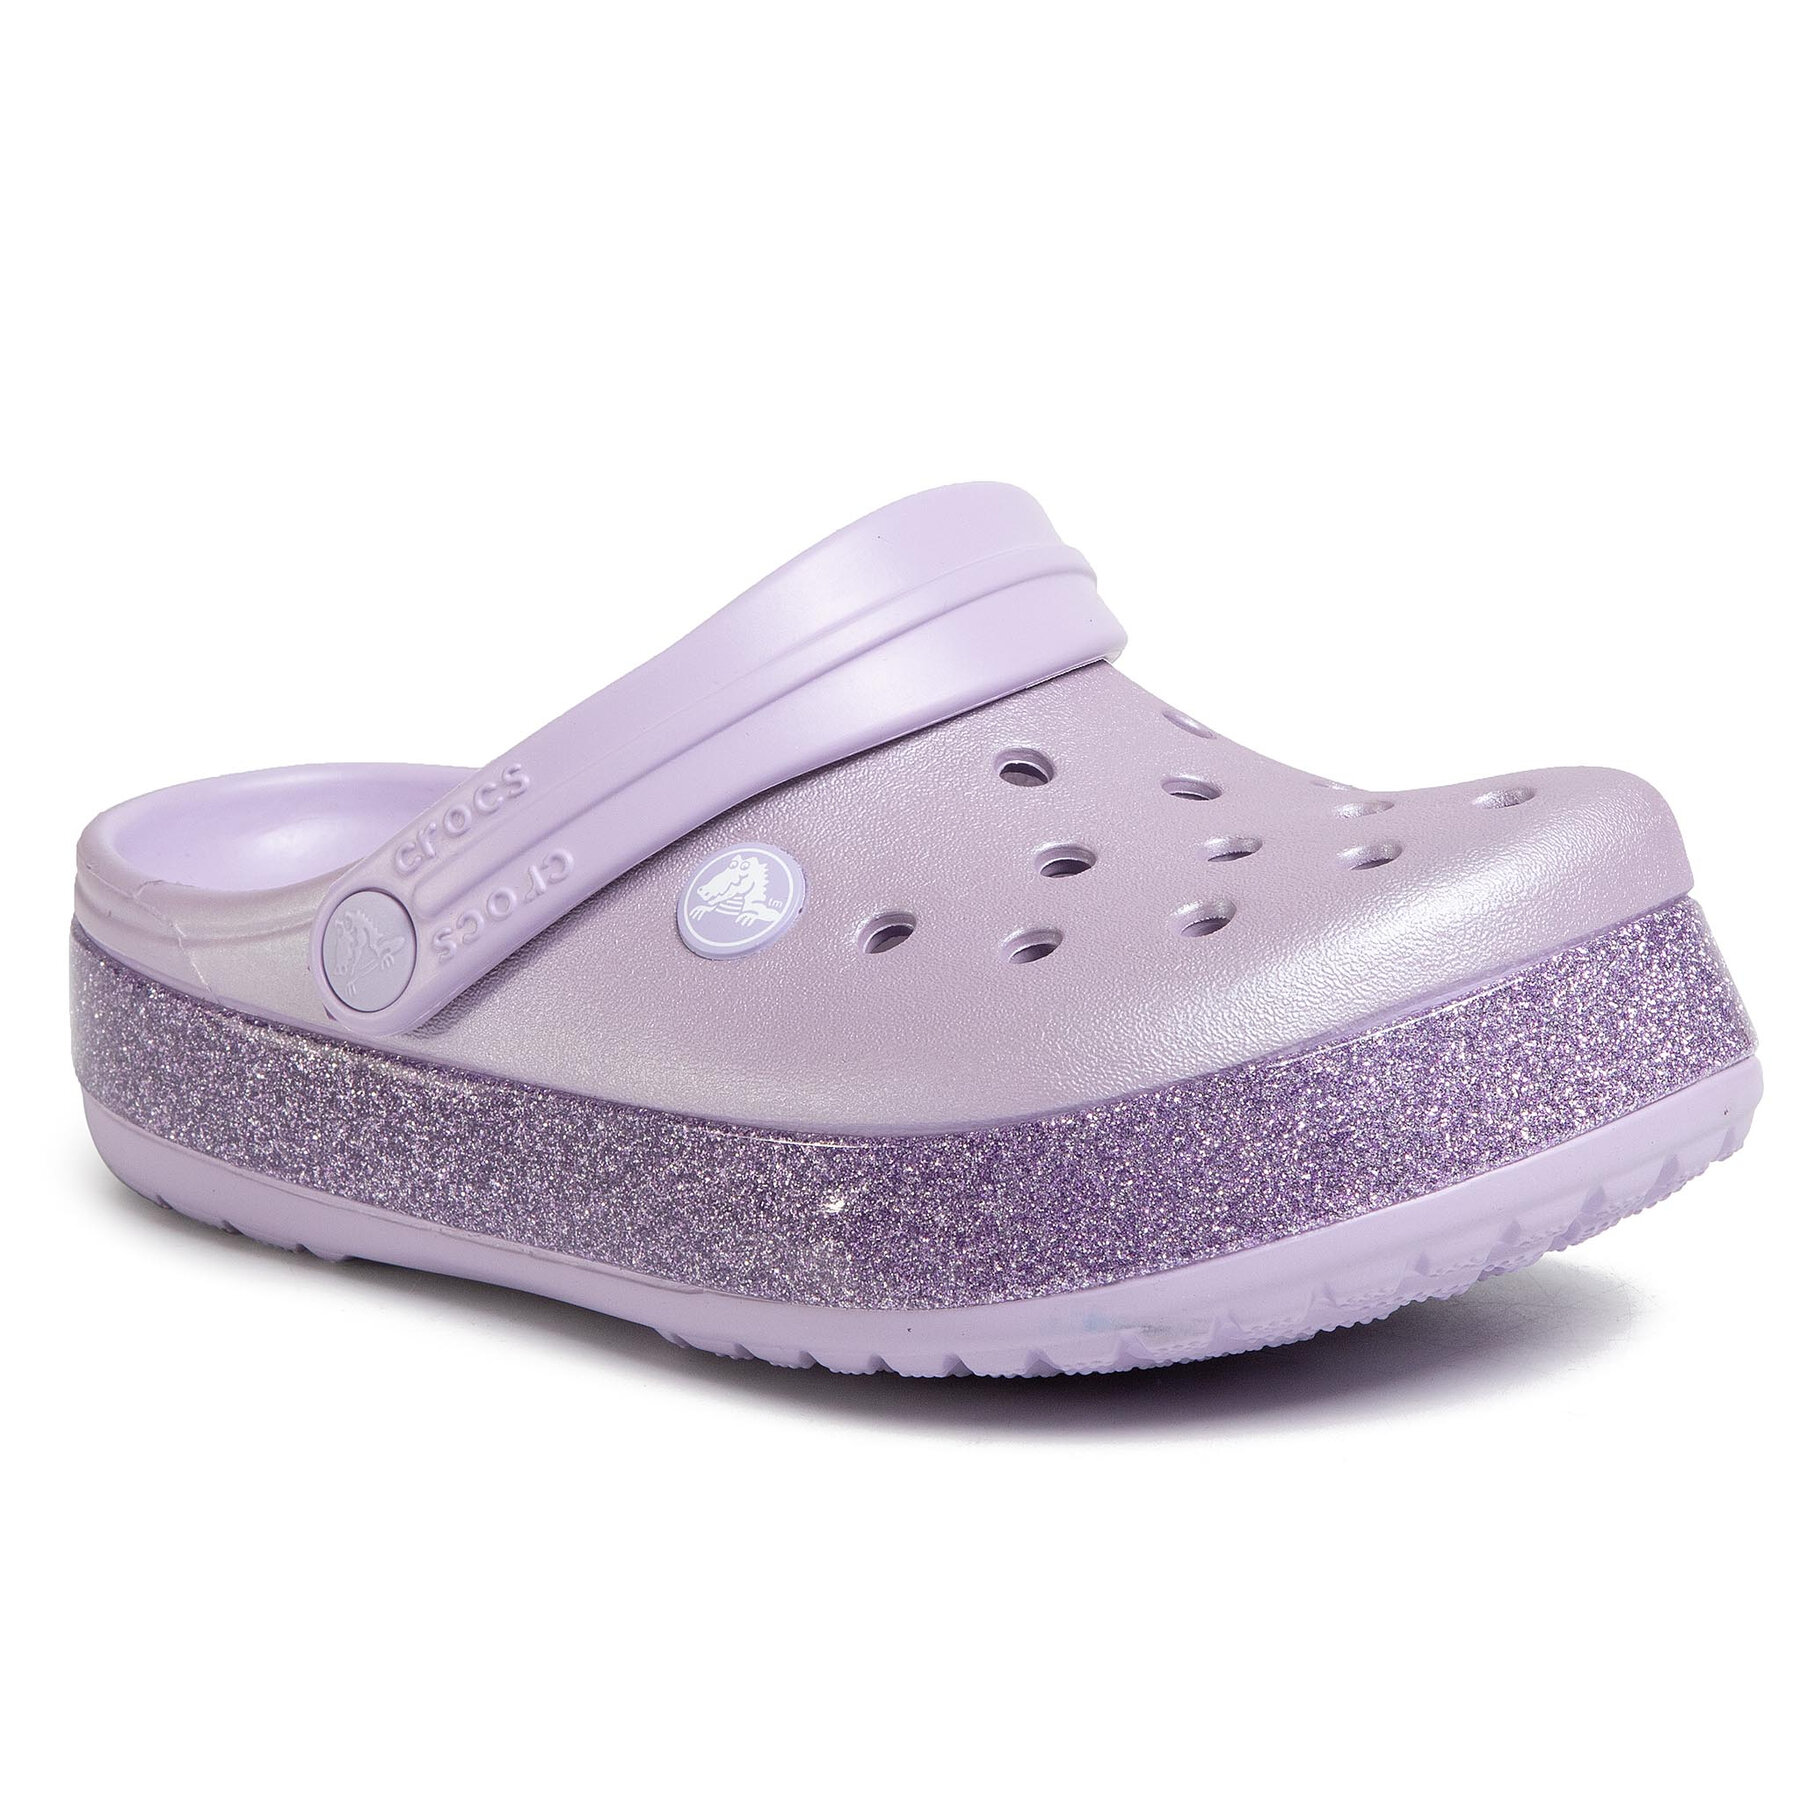 Comprar en oferta Crocs Kids Crocband Glitter Clog